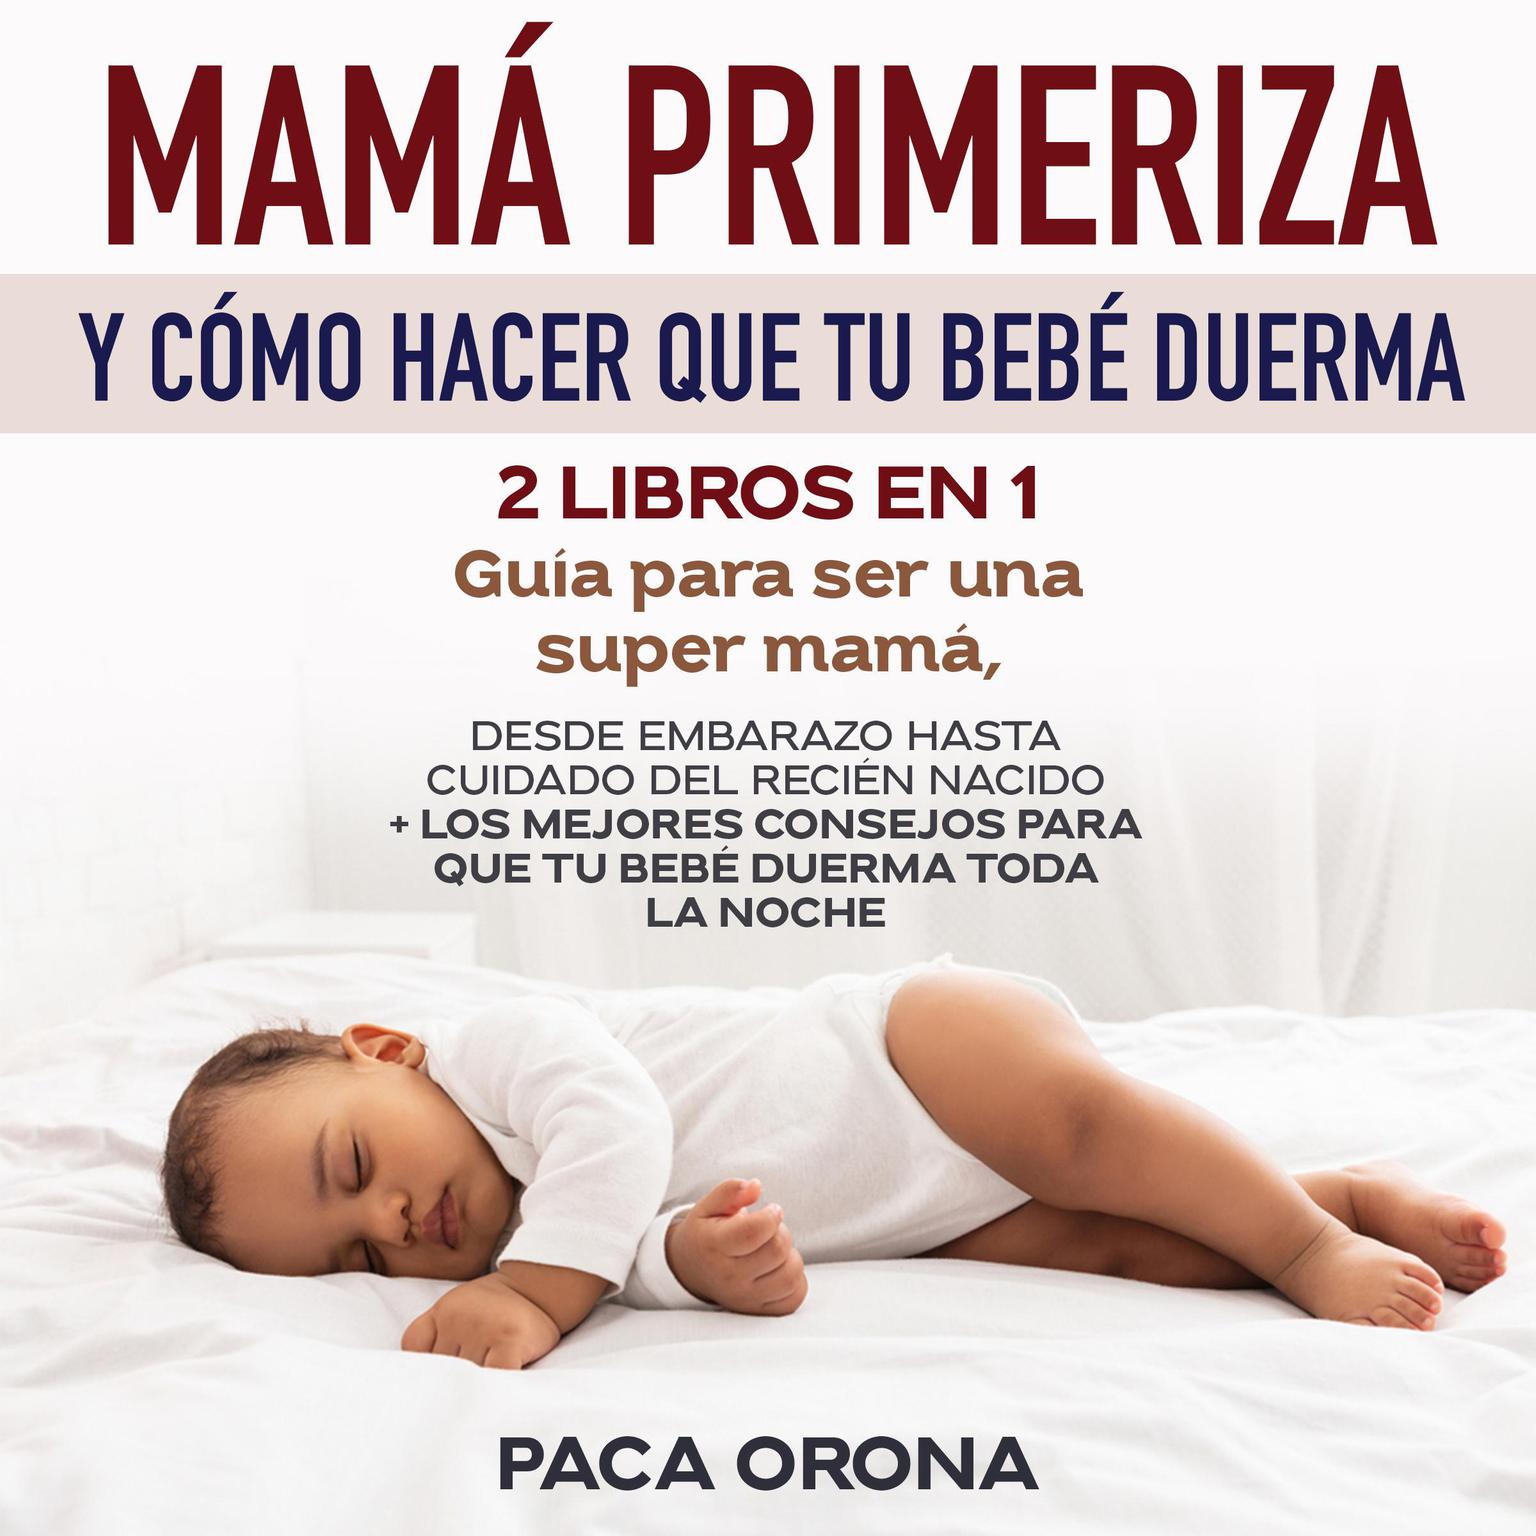 Mamá primeriza y cómo hacer que tu bebé duerma 2 libros en 1 Audiobook, by Paca Orona